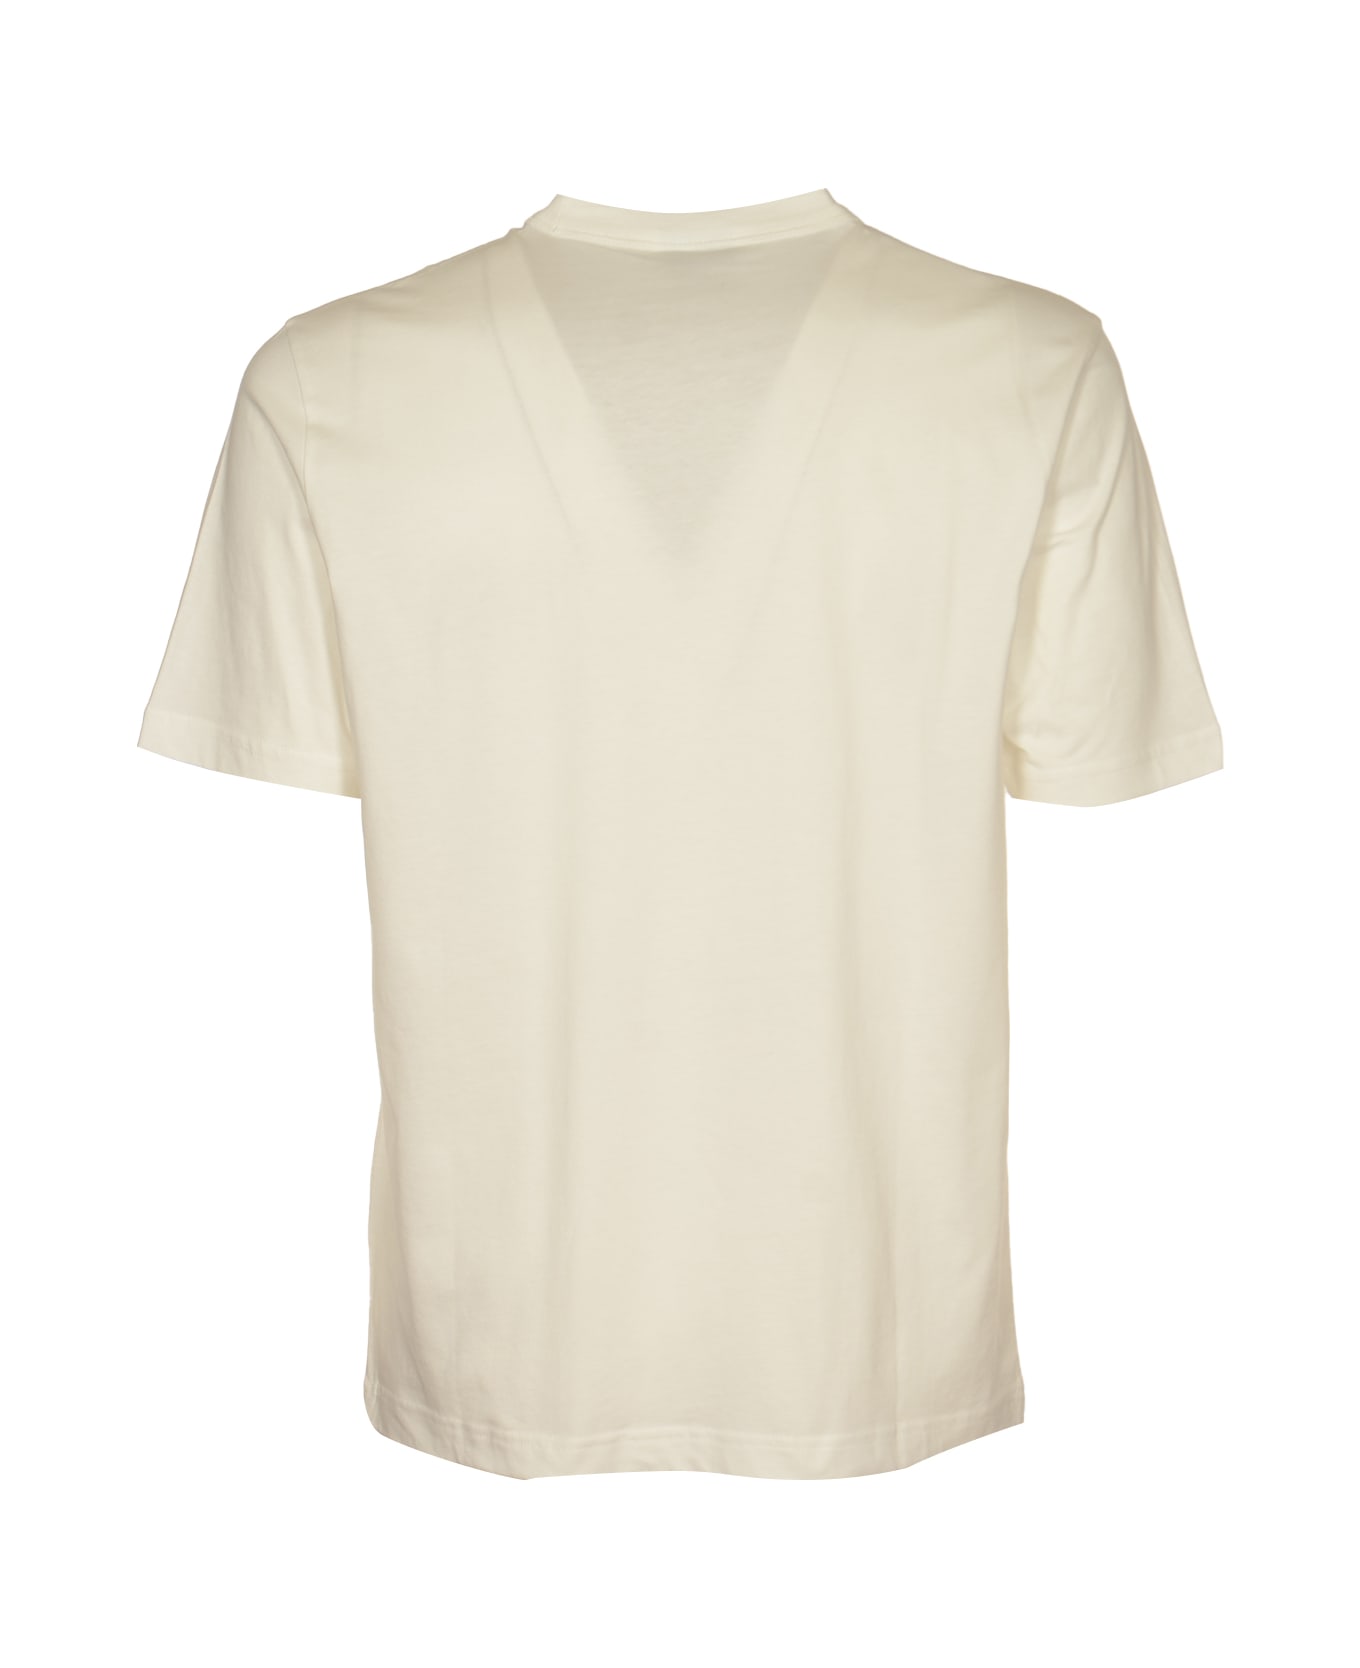 Paul Smith Linear Skull T-shirt - White